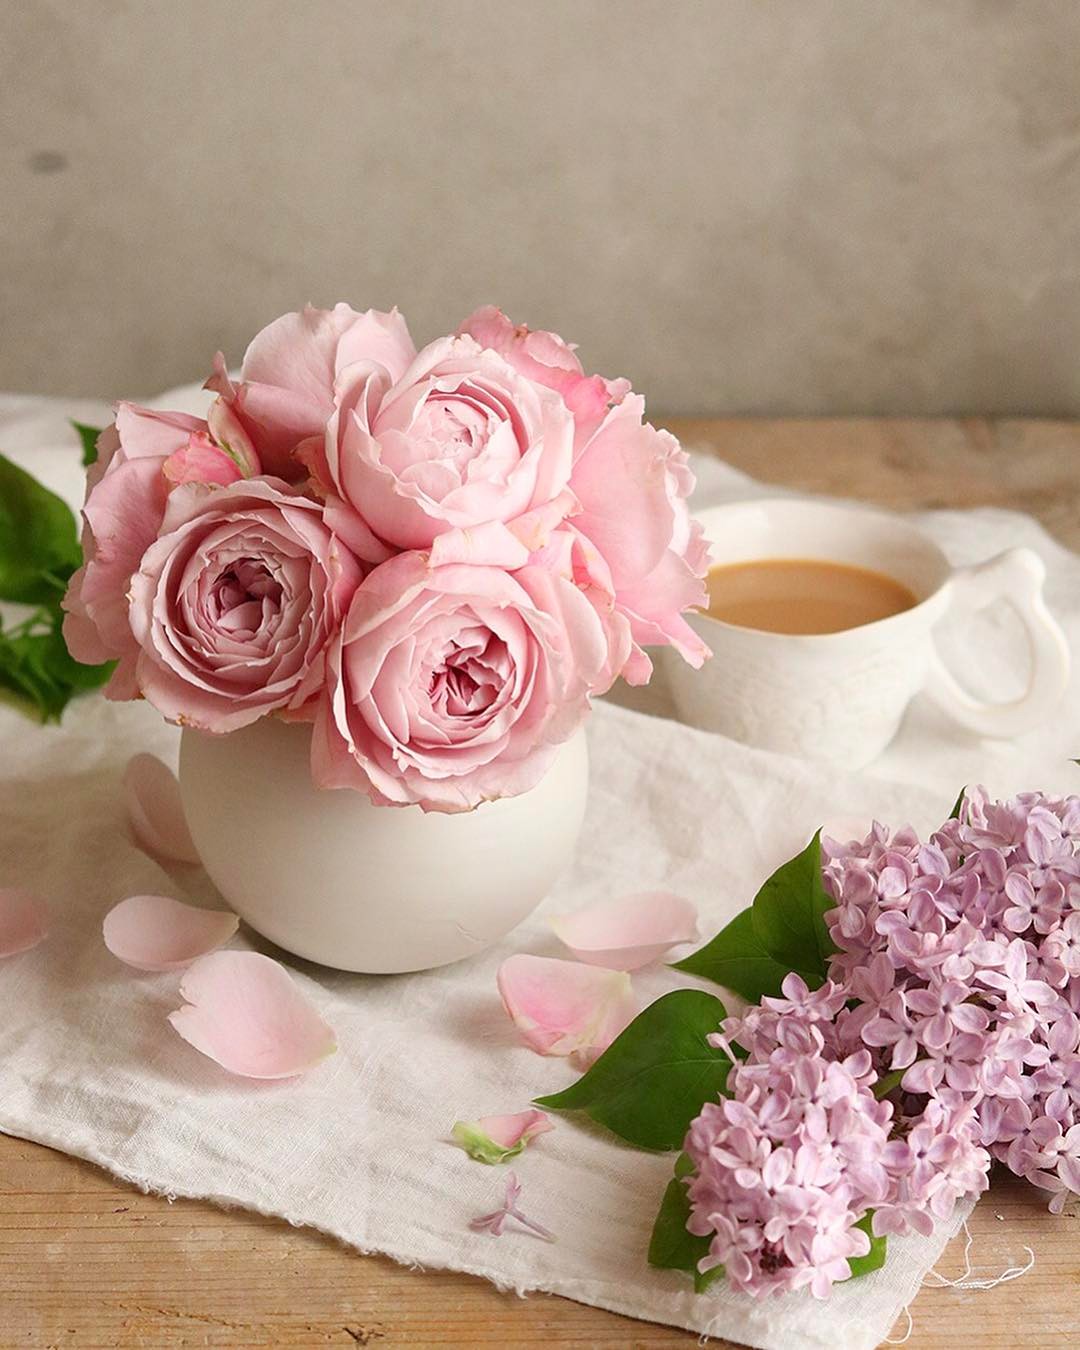 Картинка утро доброе розовое. Доброе утро цветы. Доброе утро розовое. Доброе утро в розовом цвете. Розовое утро.